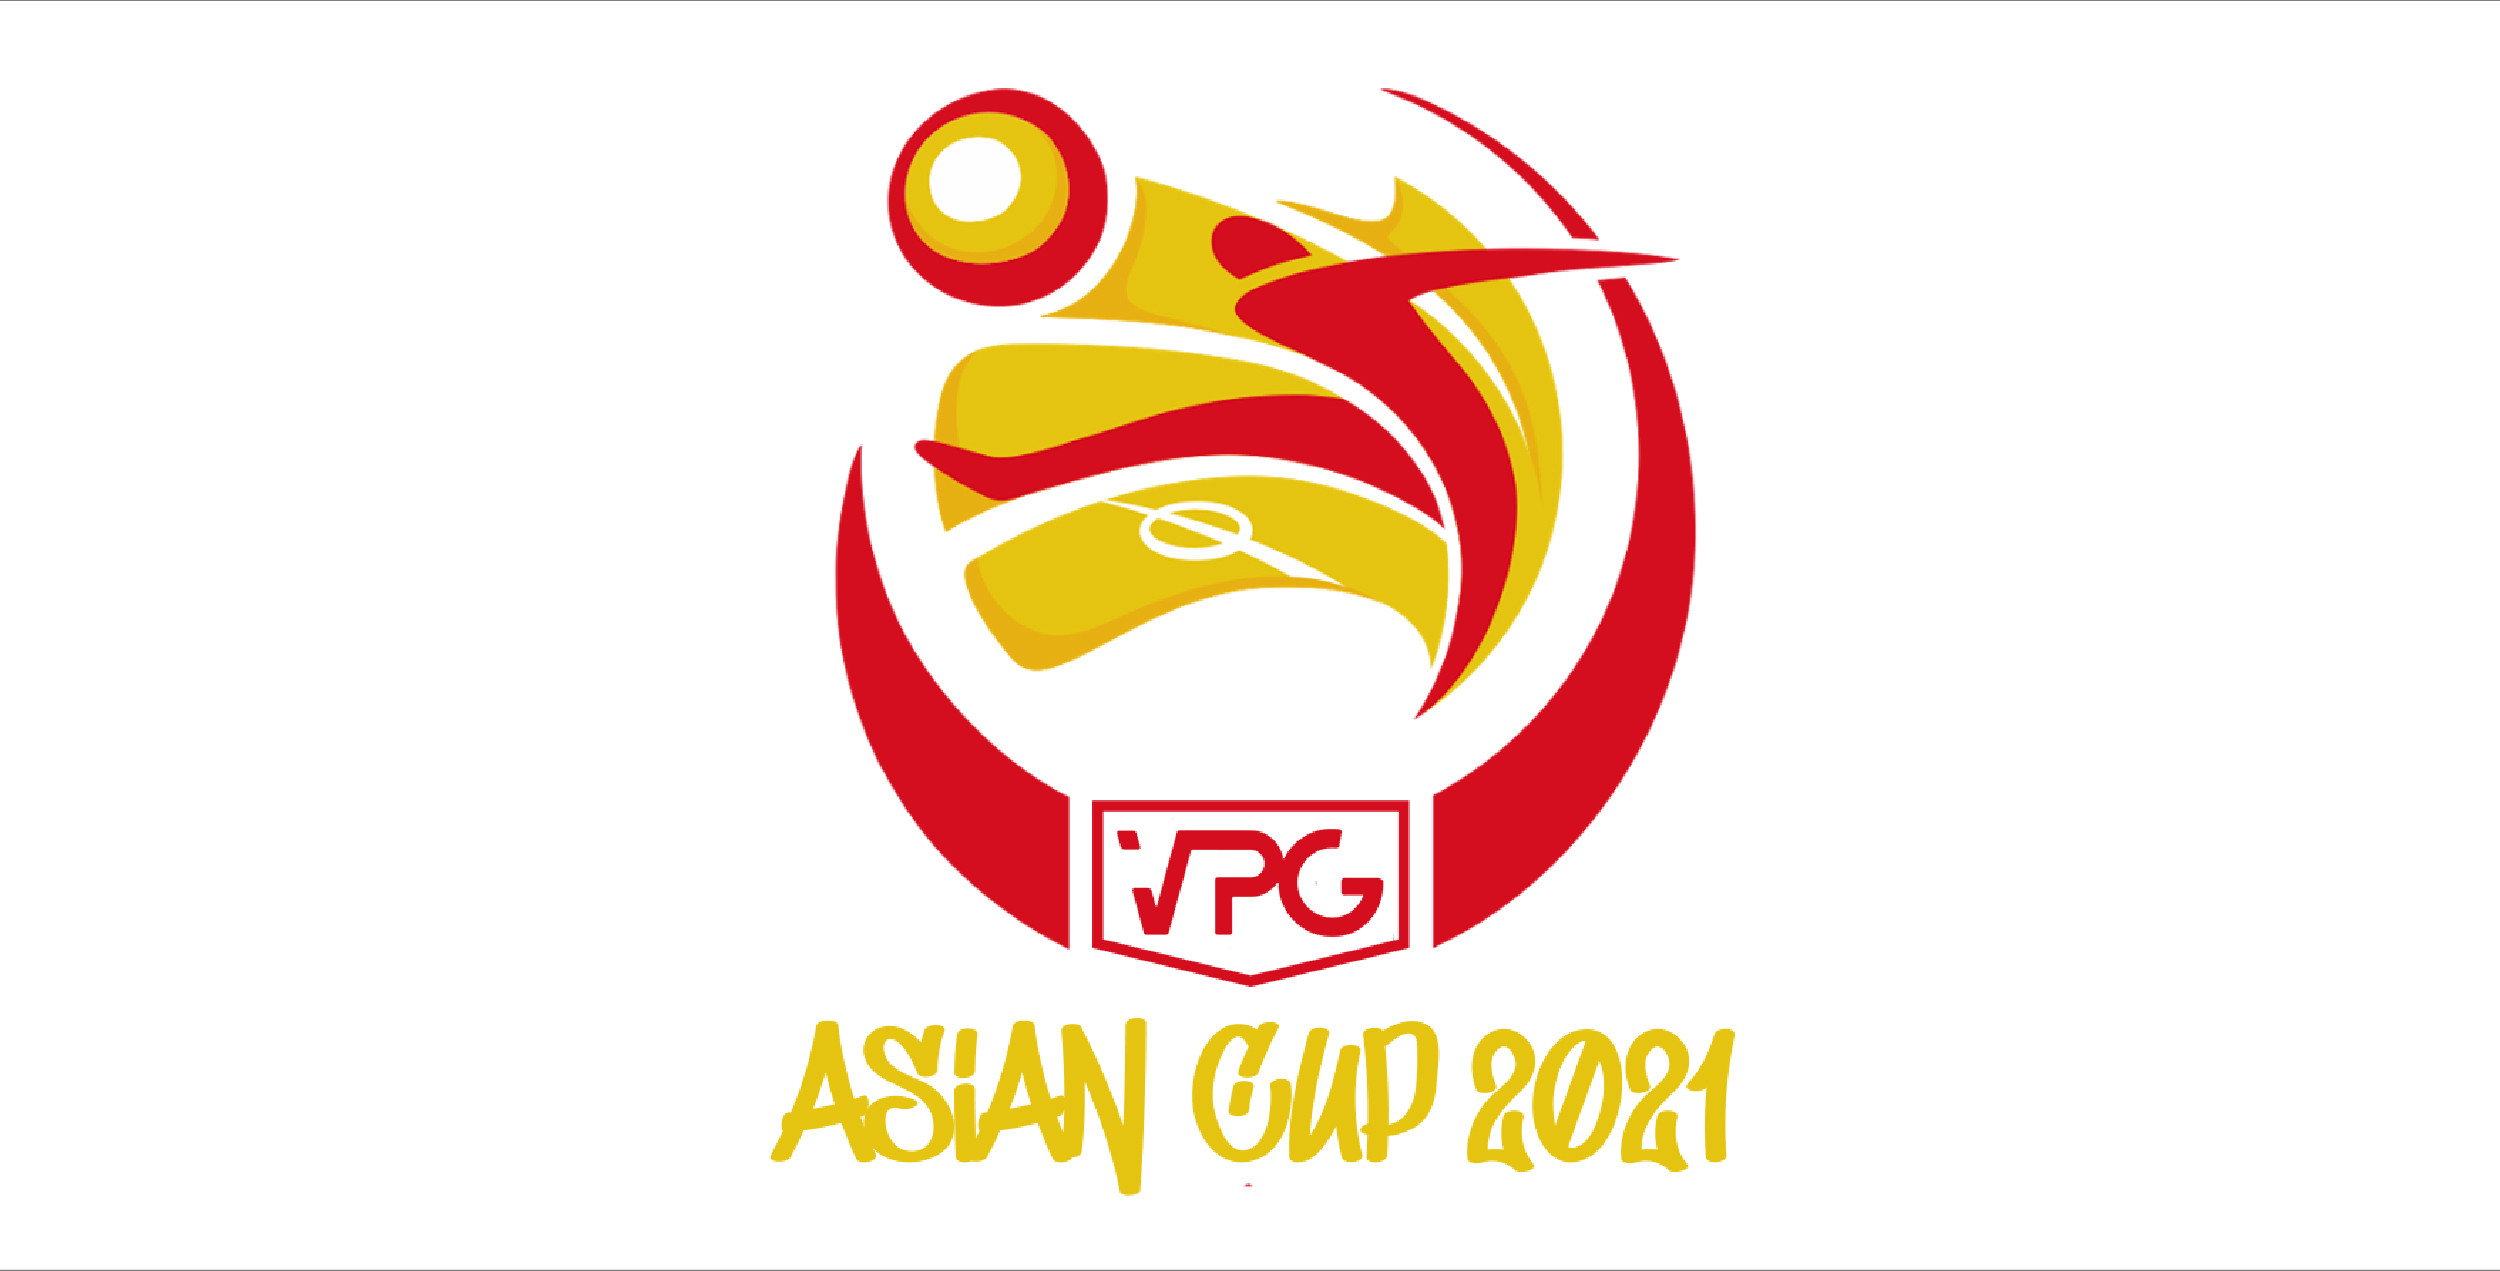 【大会レポート】FIFA21 VPG ASIAN CUP (11 vs 11 Pro Clubs) グループステージ結果